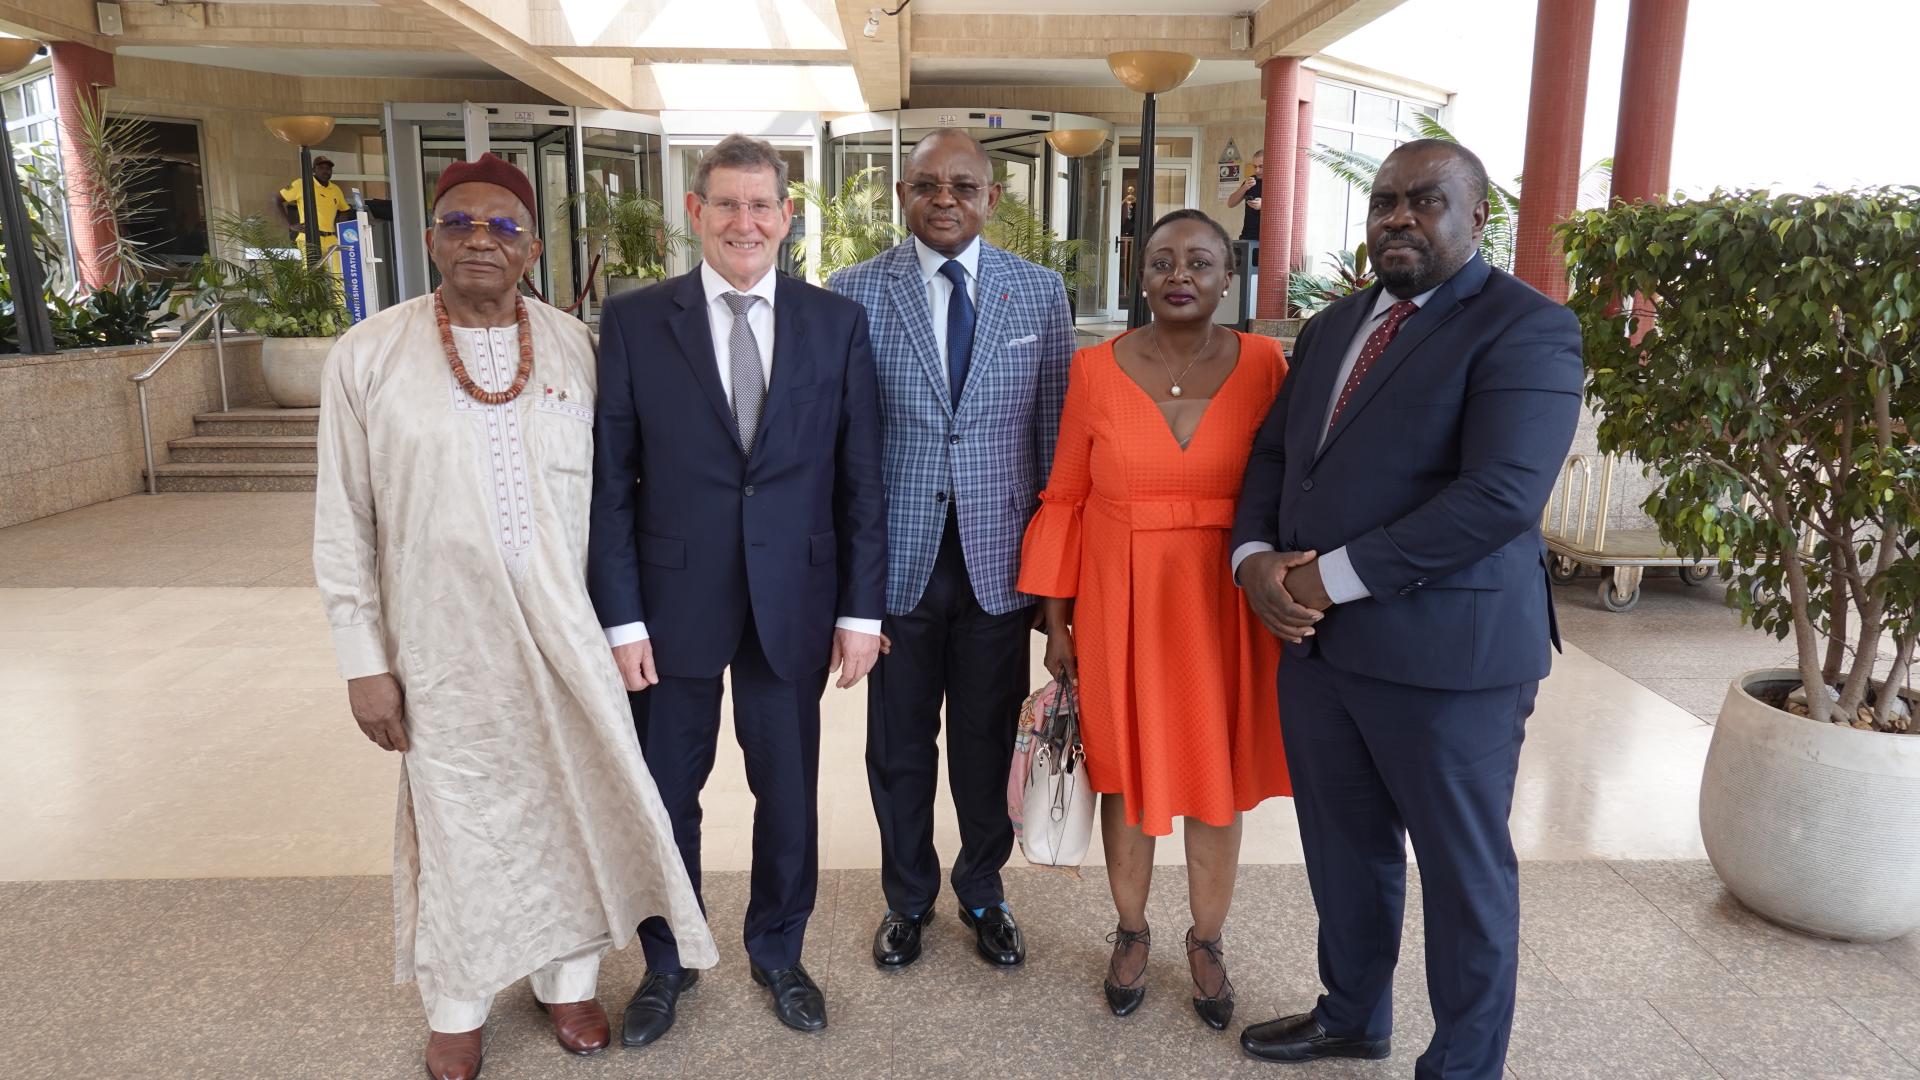 Le député Gusty Graas a représenté le Président de la Chambre au Cameroun. Il y a rencontré les membres du groupe d’amitié parlementaire Gabriel FANDJA, Paul Eric DJOMGOUE, Eveline TASSI, Bakia LAWSON TABOT.